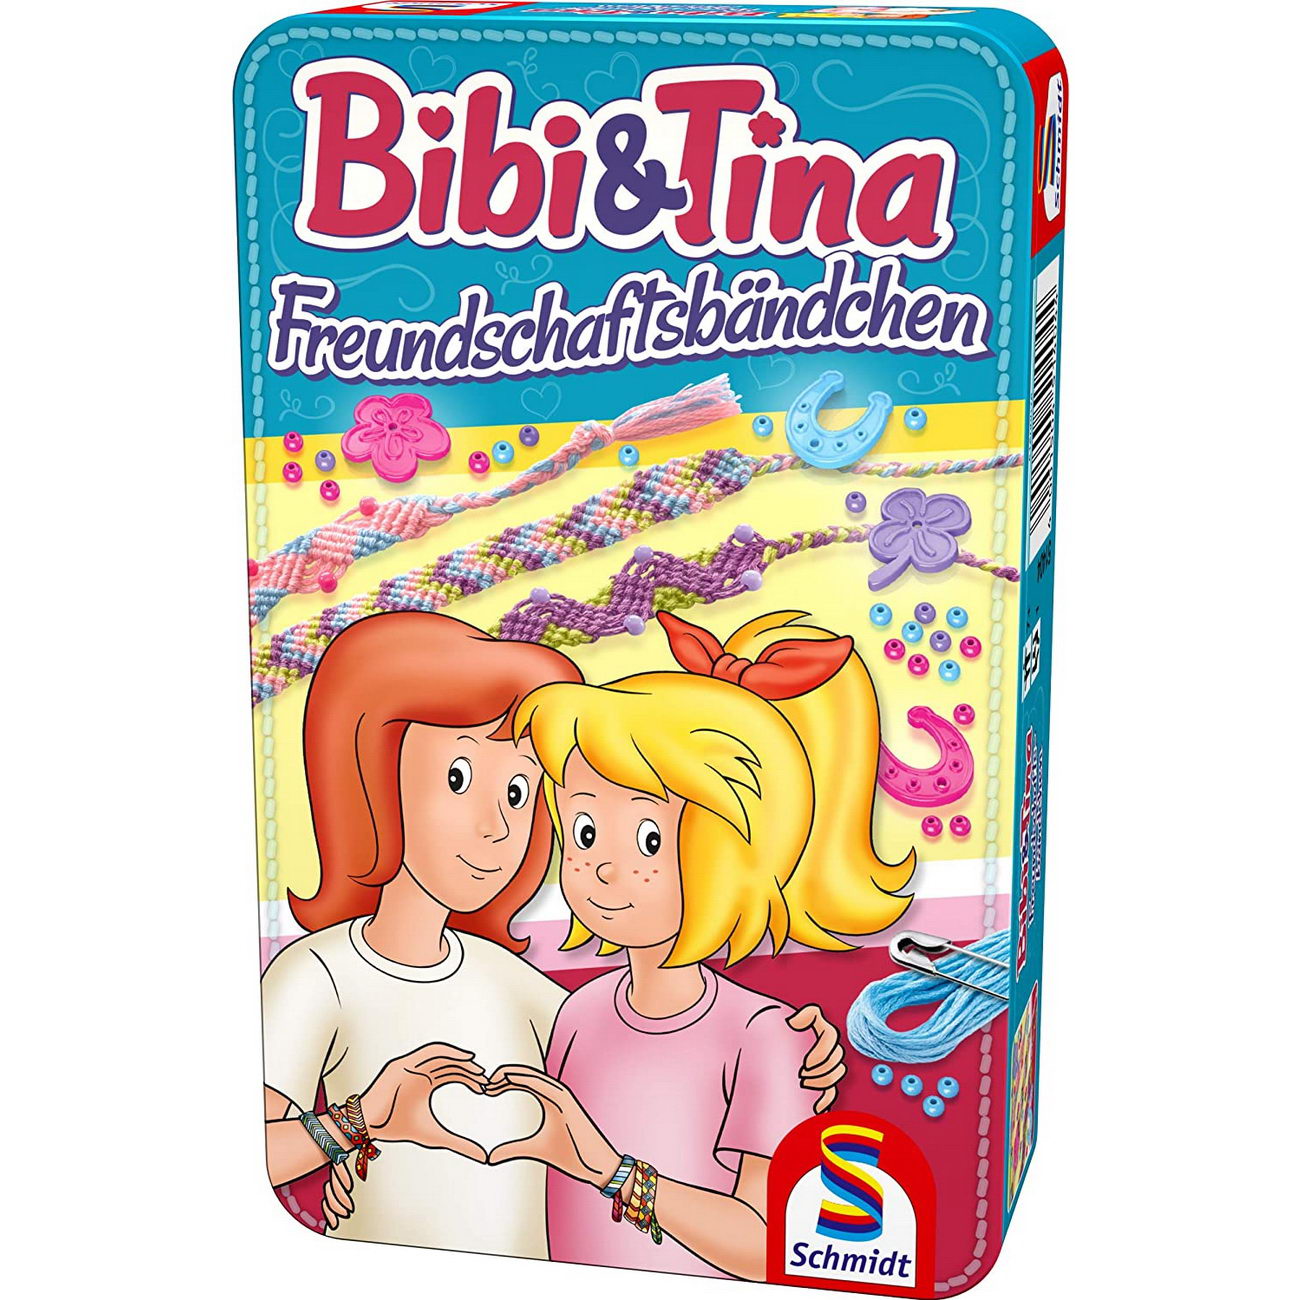 Bibi und Tina - Freundschaftsbändchen Metalldose (Schmidt 51404)